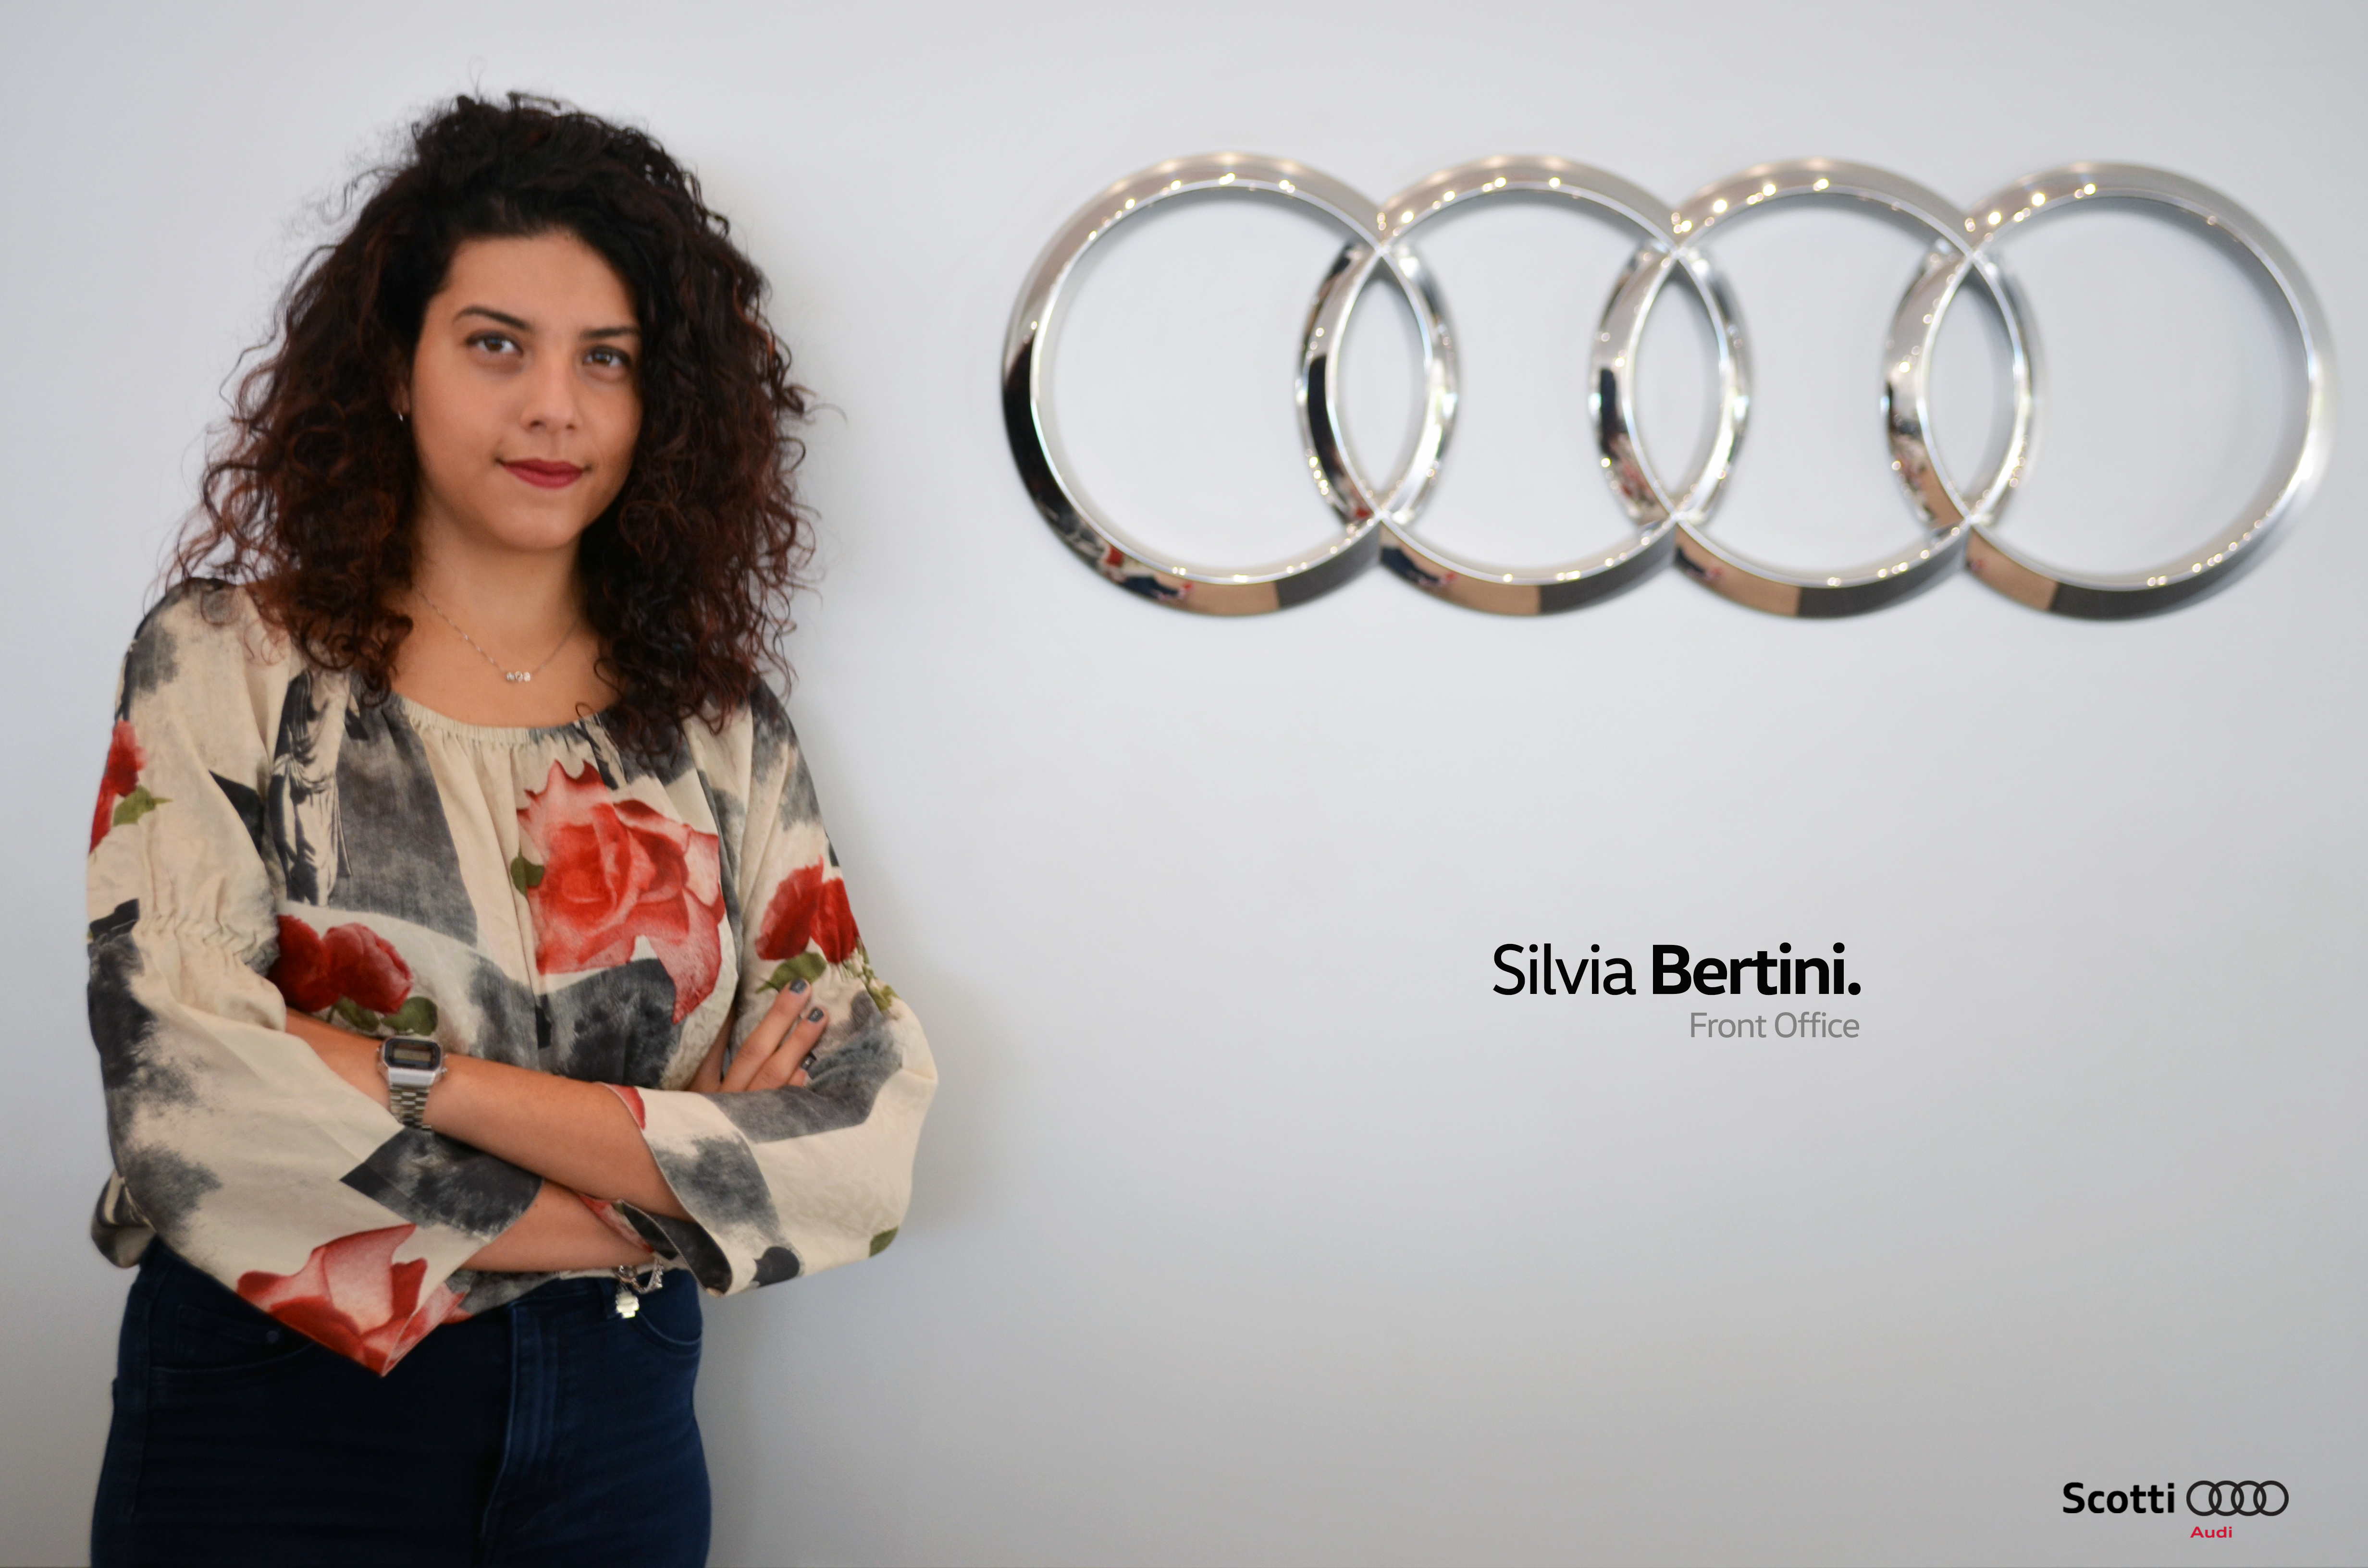 Silvia Bertini